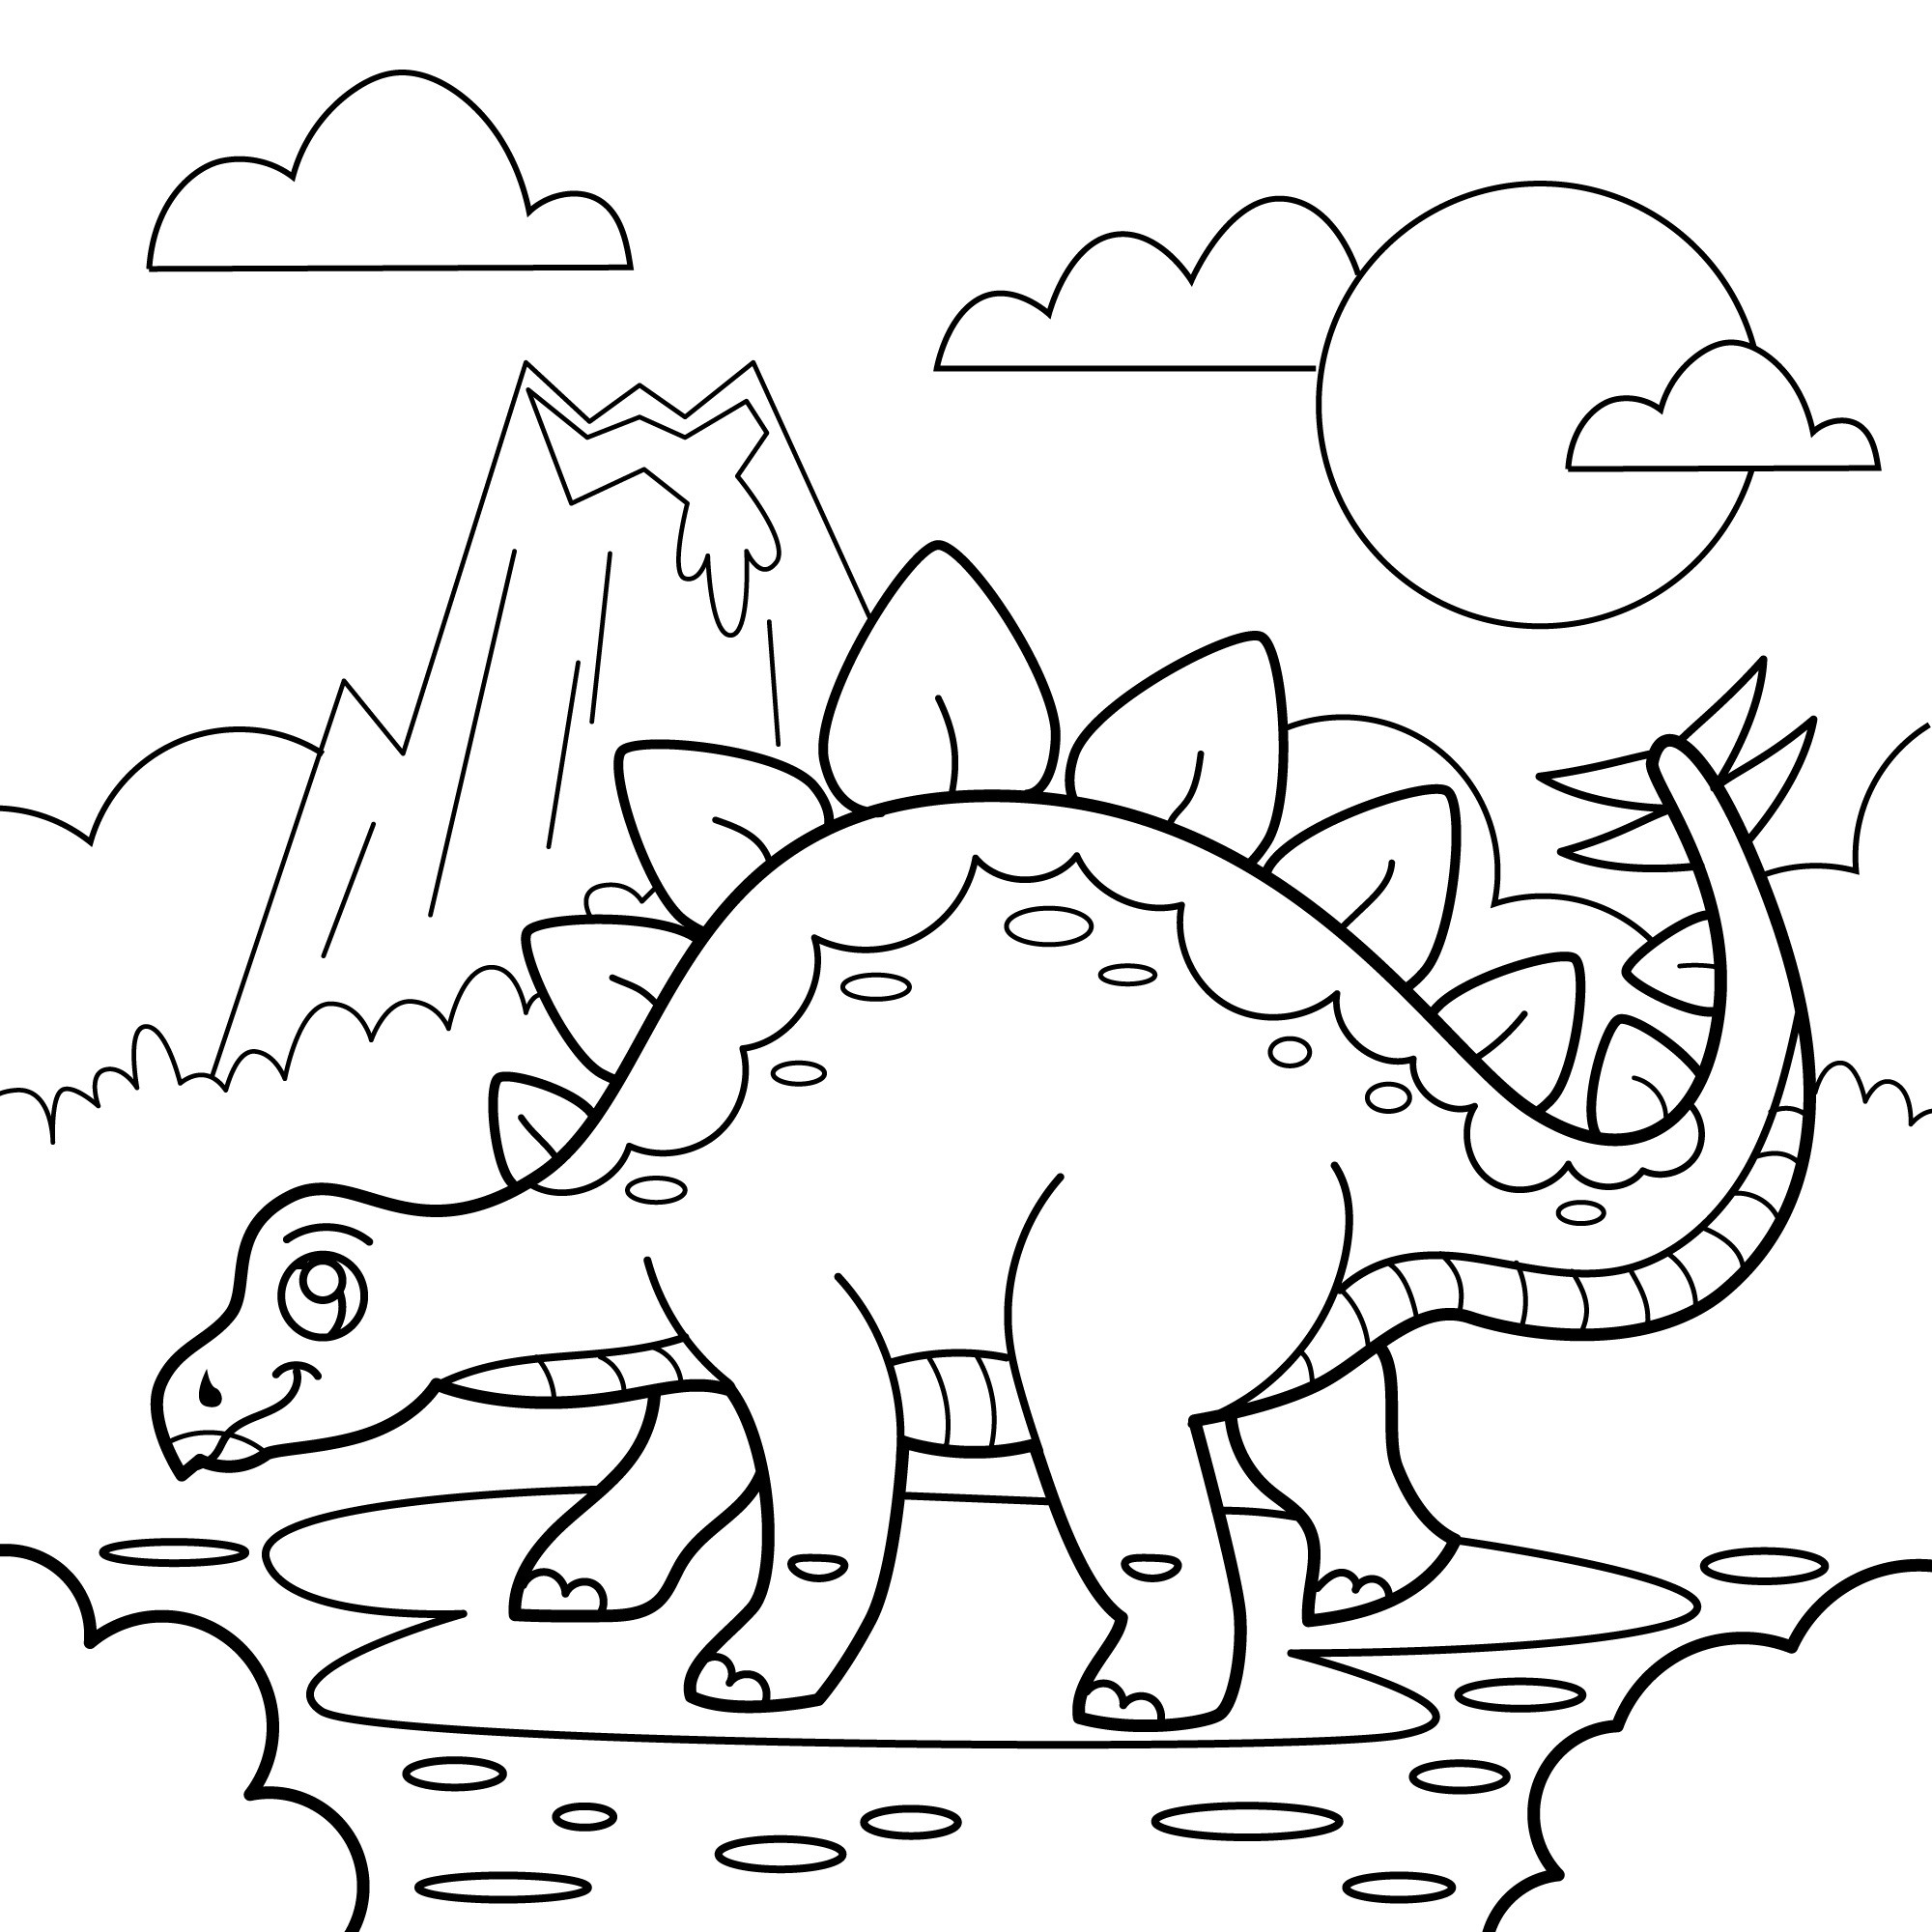 Раскраска для детей: динозавр стегозавр на поляне